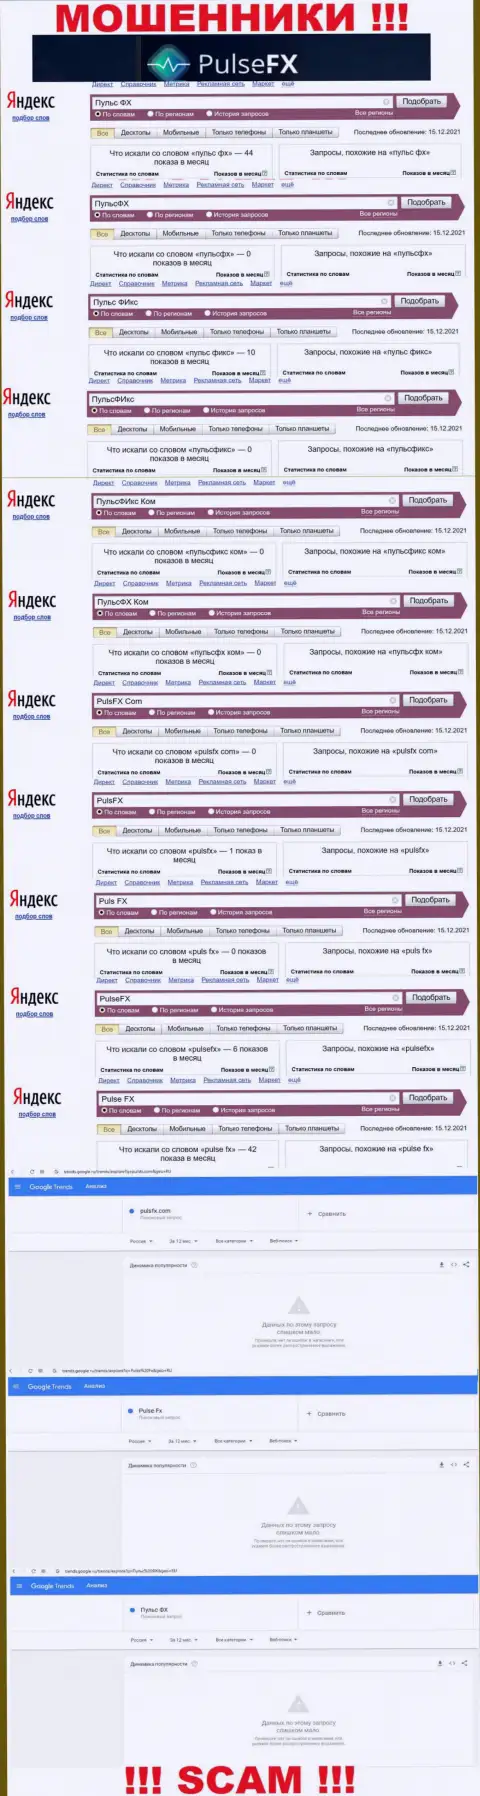 Количество online запросов в глобальной сети интернет по бренду жуликов ПульсФХ